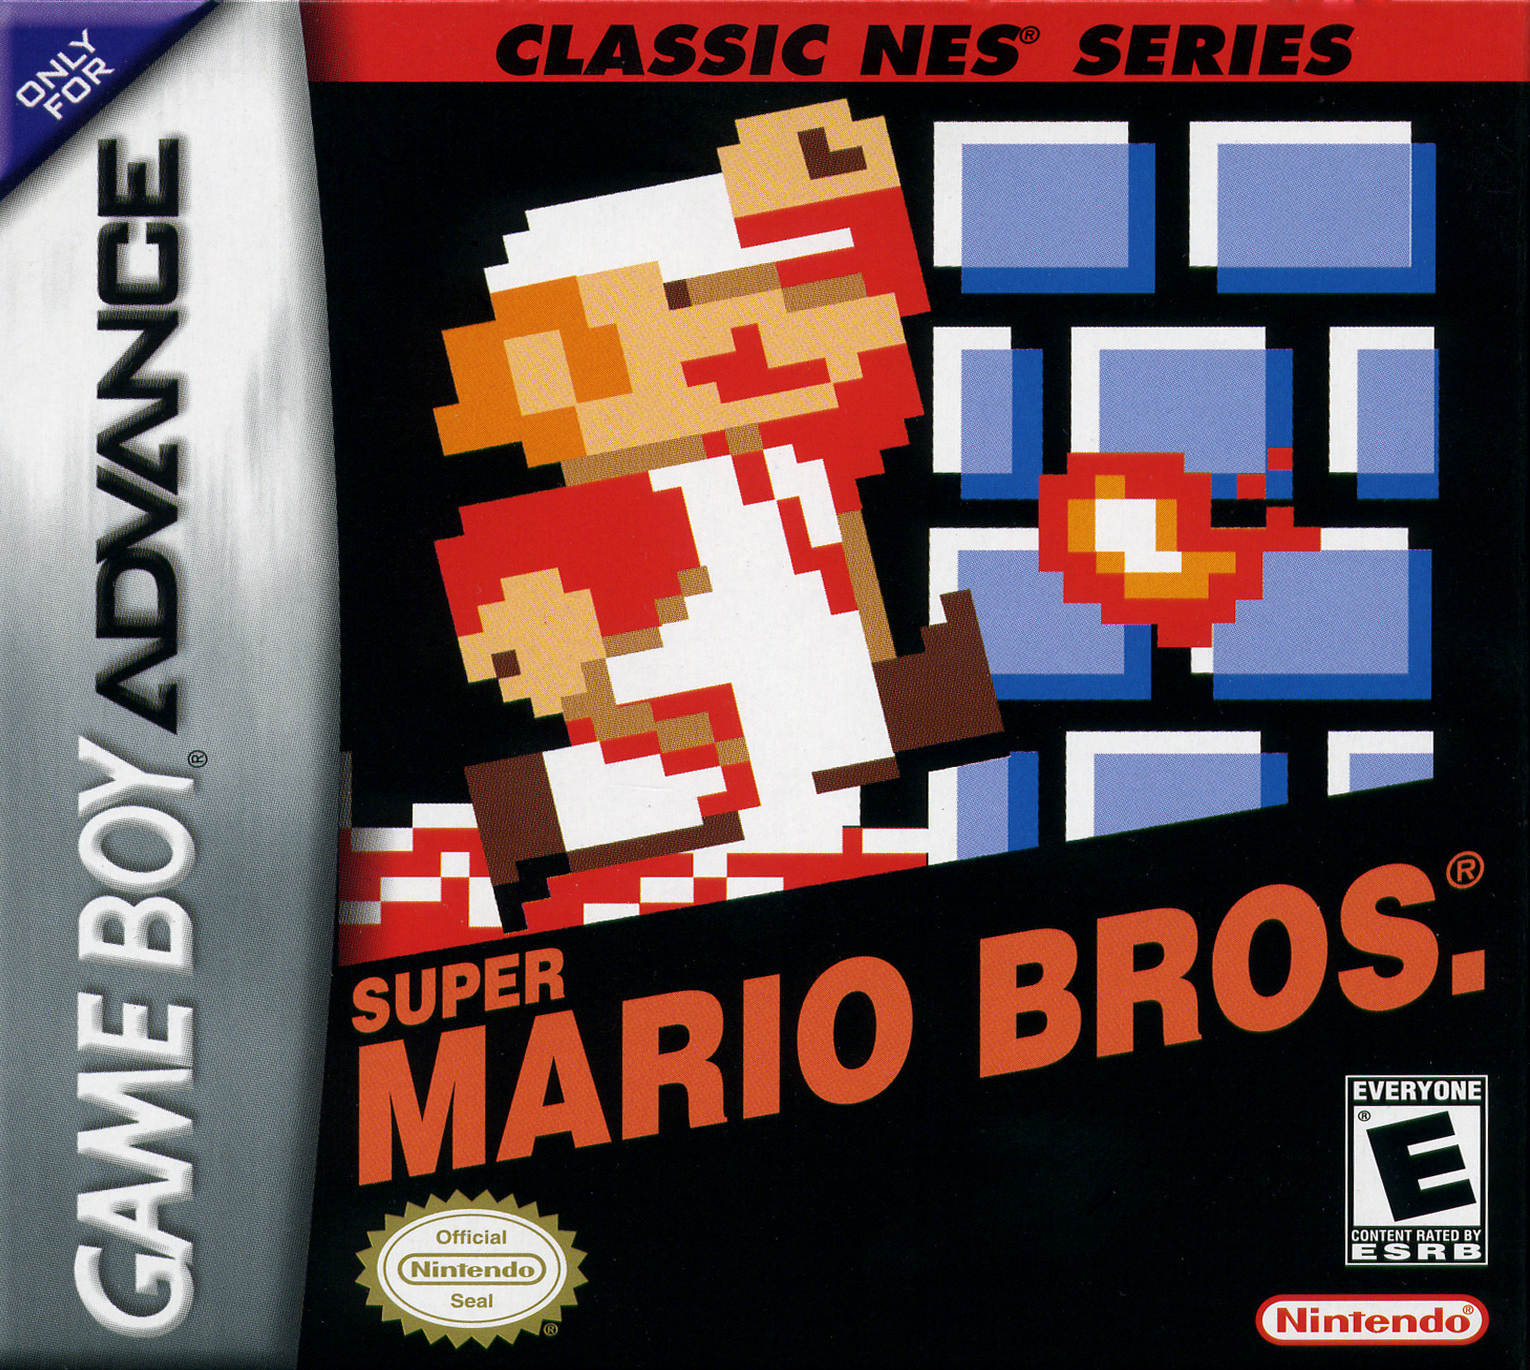 Classic NES Series: Super Mario Bros. Details - LaunchBox Games Database